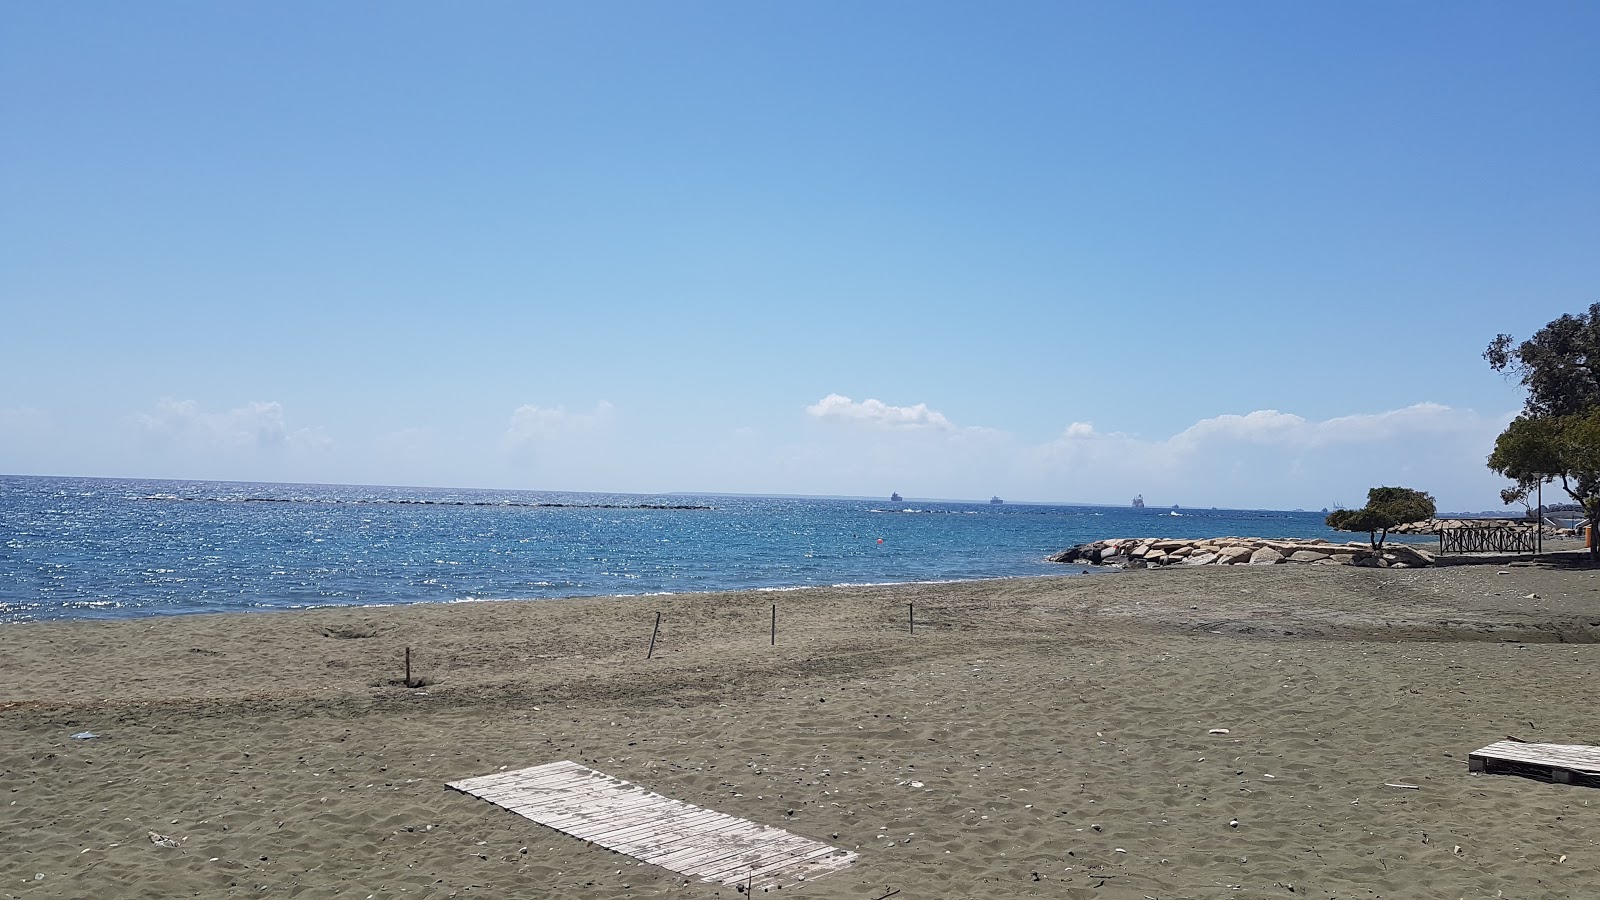 Zdjęcie Armonia beach - popularne miejsce wśród znawców relaksu